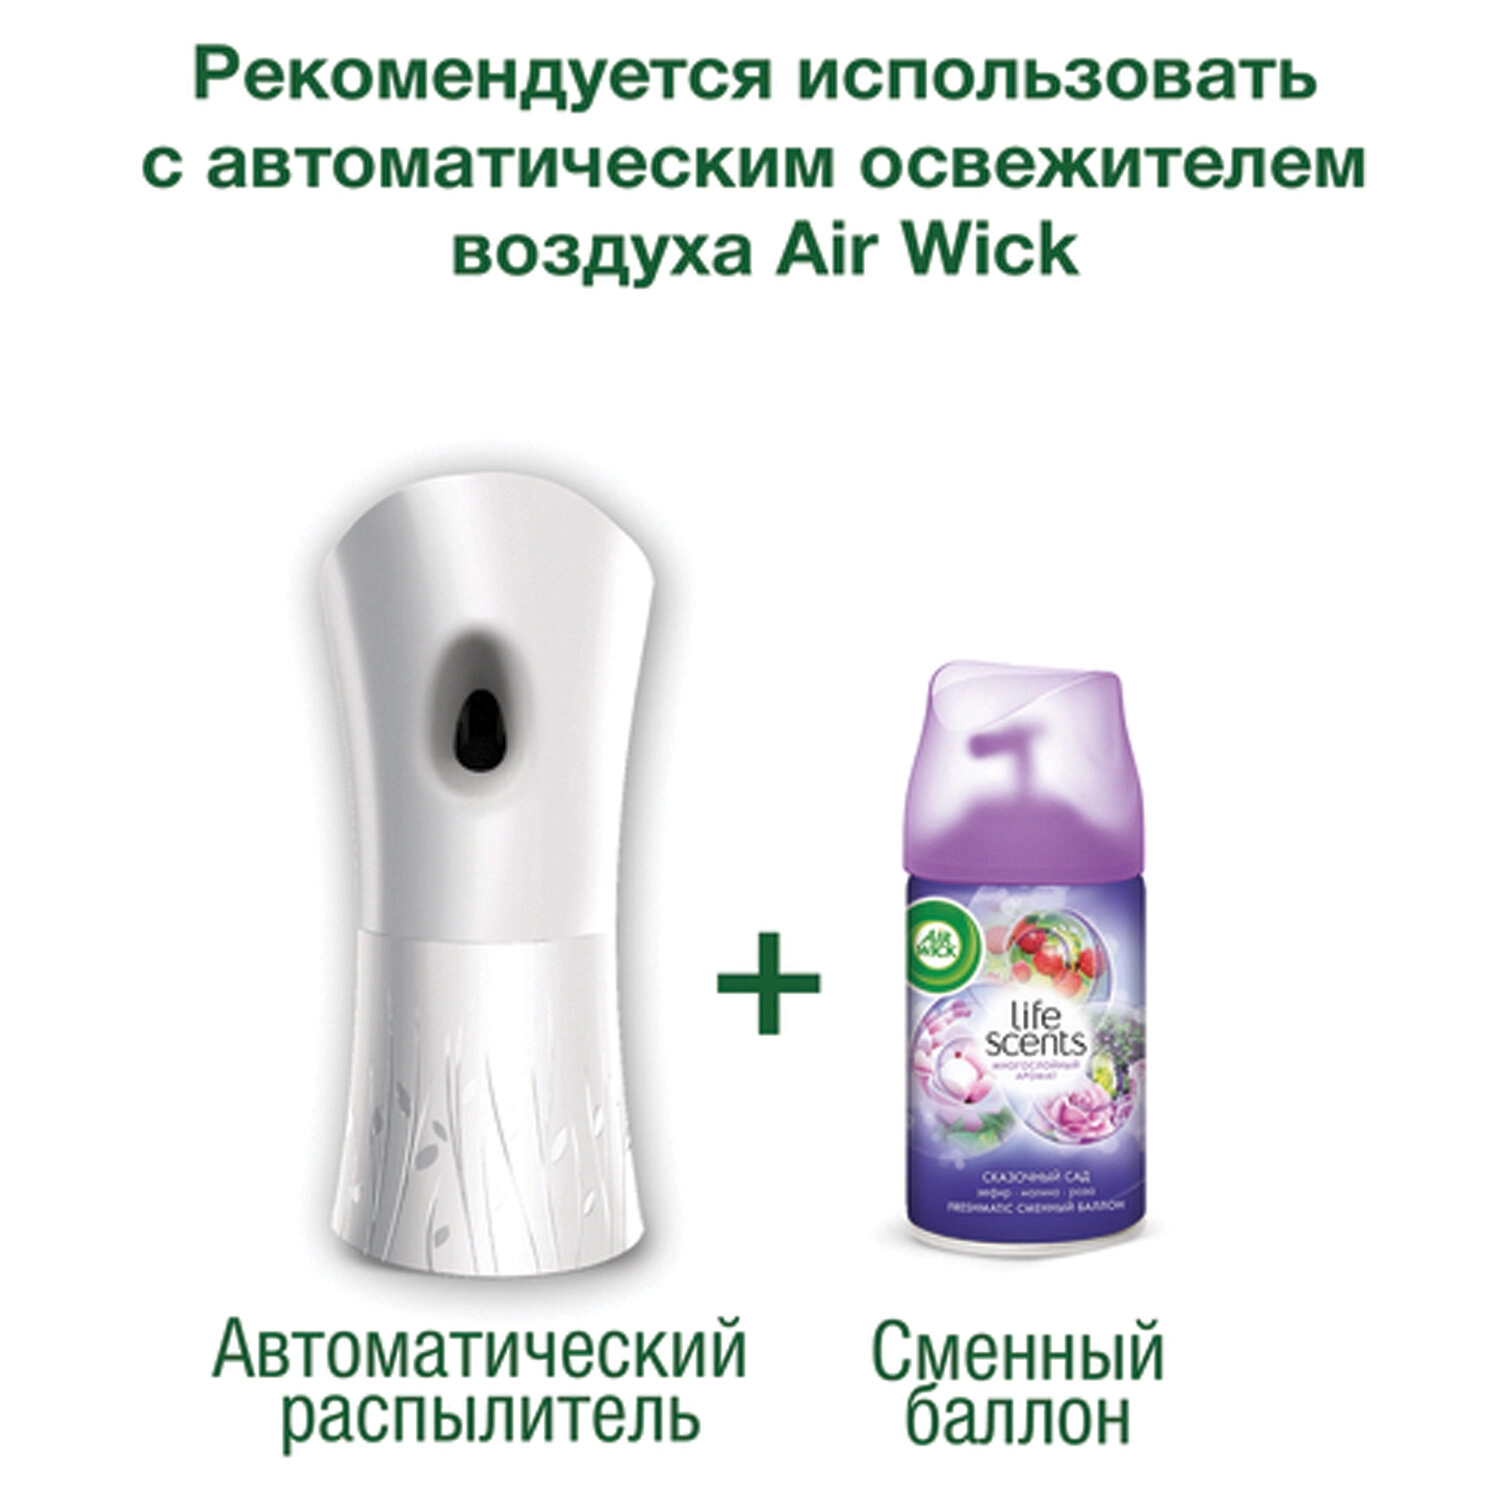 Сменный блок для освежителя воздуха Air Wick LifeScents Волшебный сад 250 мл